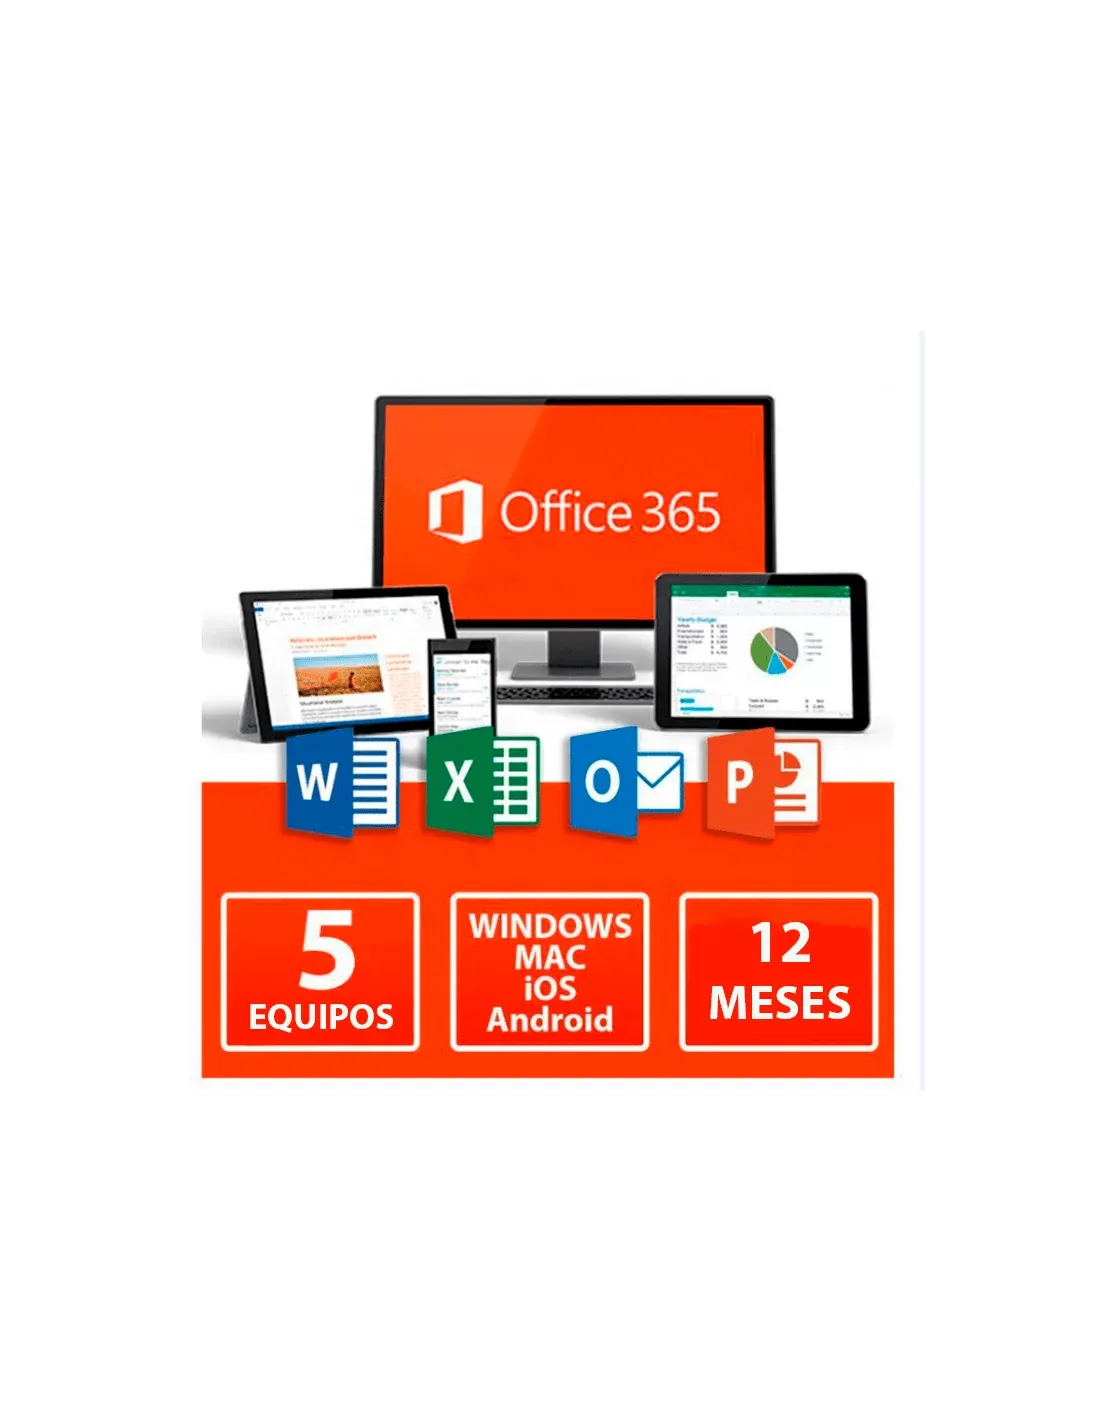 Licencia office 365 | Comprar Office 365 y activalo